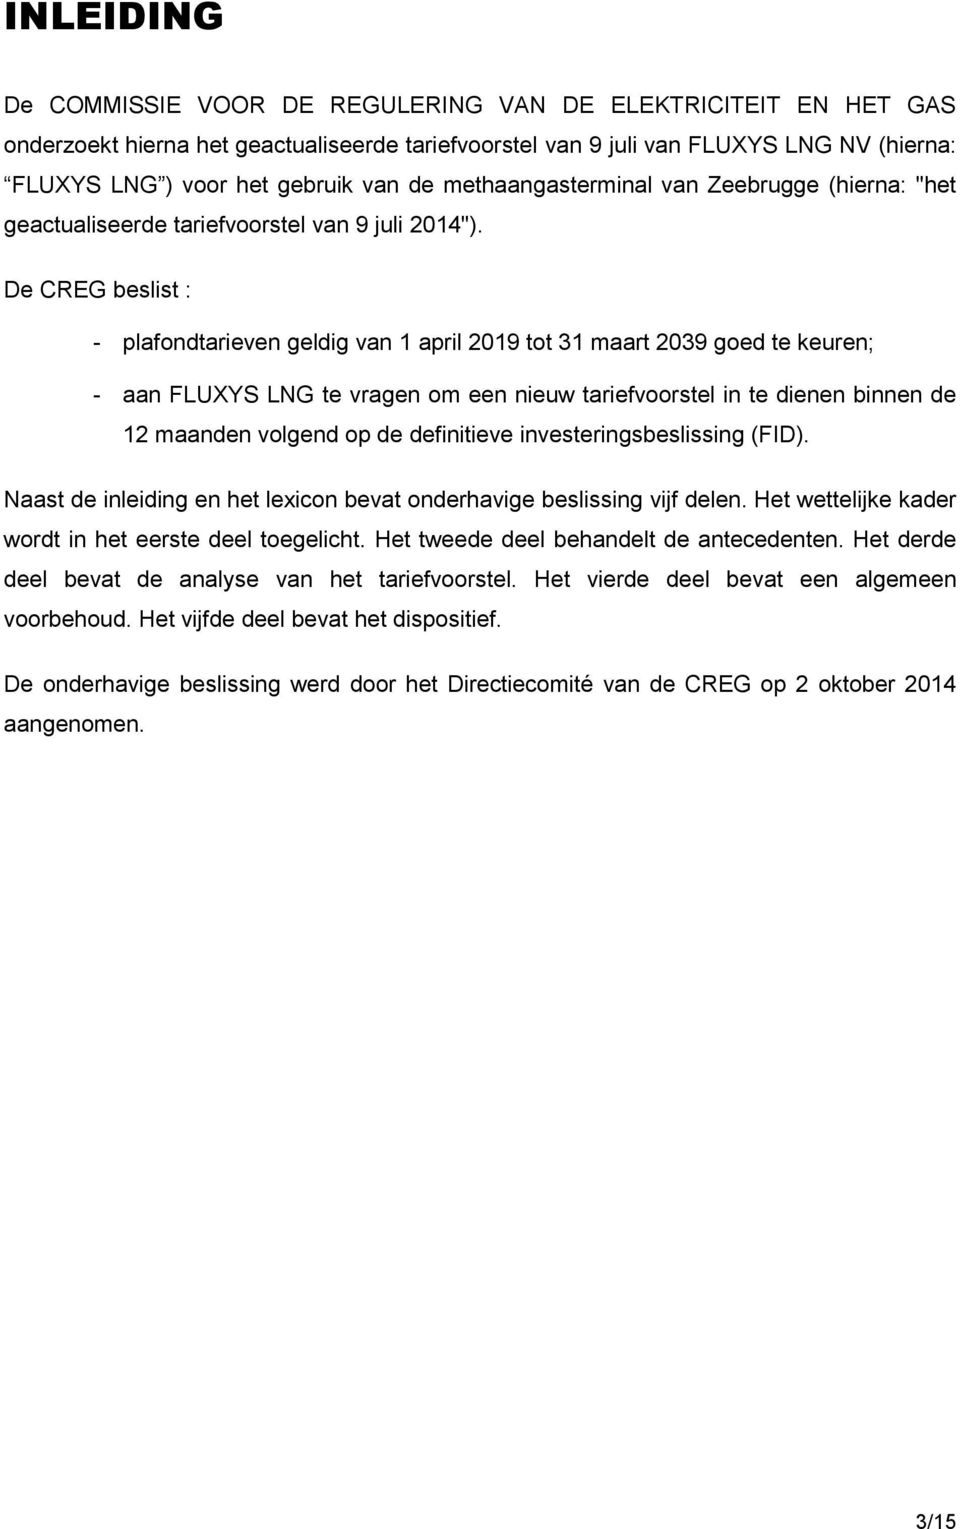 De CREG beslist : - plafondtarieven geldig van 1 april 2019 tot 31 maart 2039 goed te keuren; - aan FLUXYS LNG te vragen om een nieuw tariefvoorstel in te dienen binnen de 12 maanden volgend op de